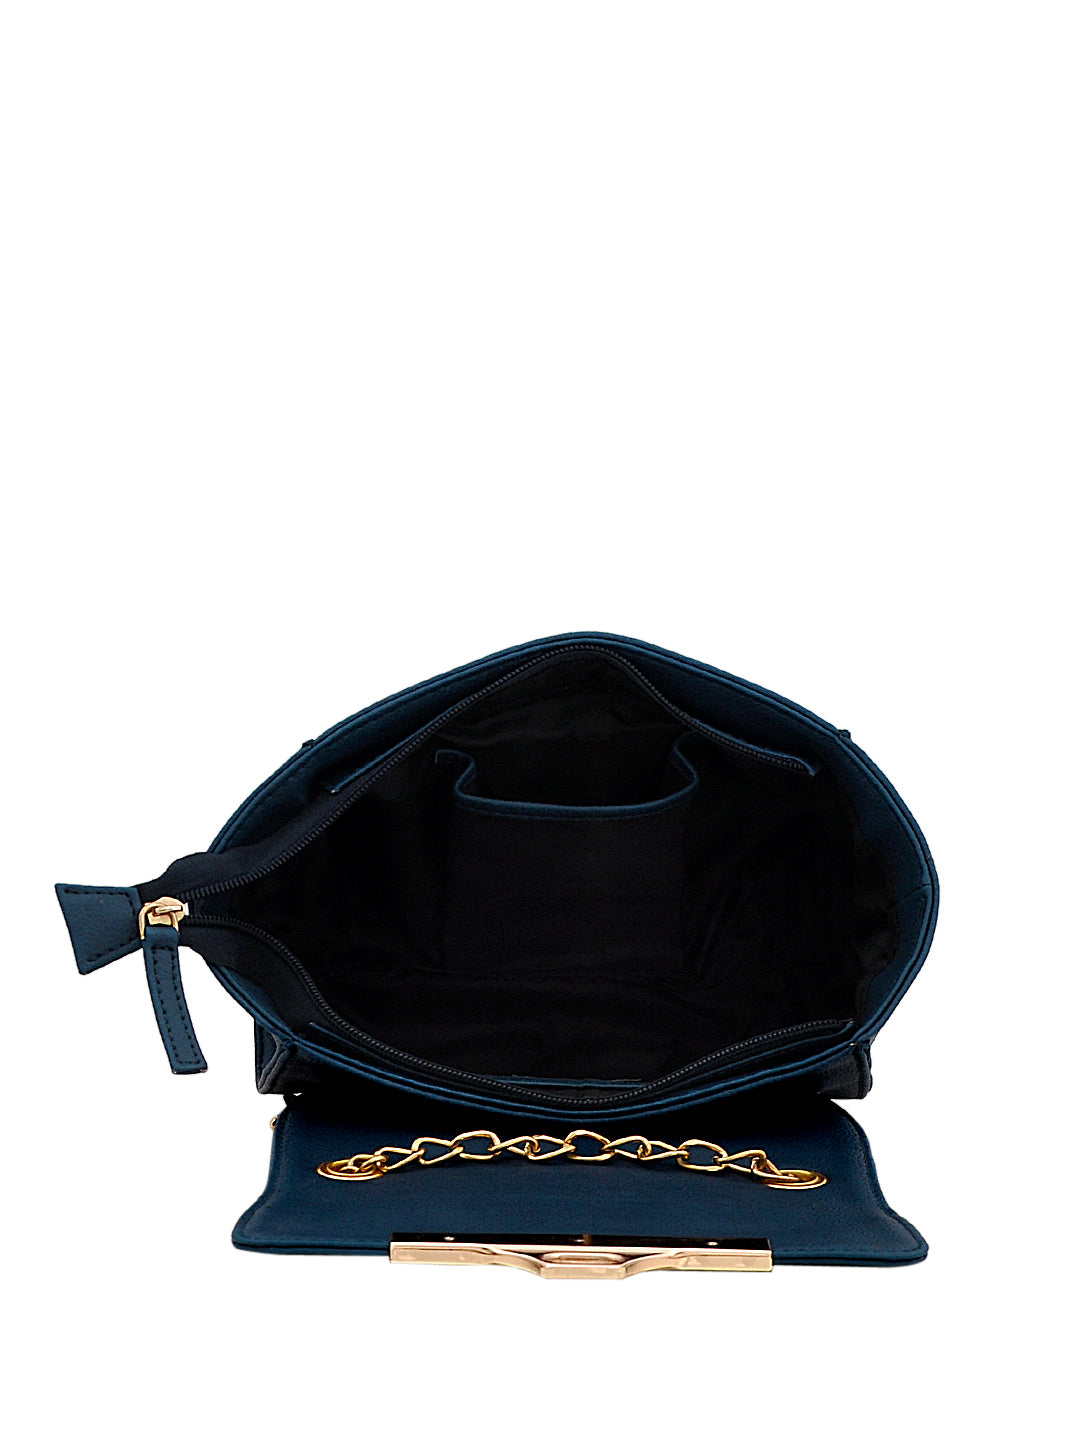 Blue Sling Bag with metal lock